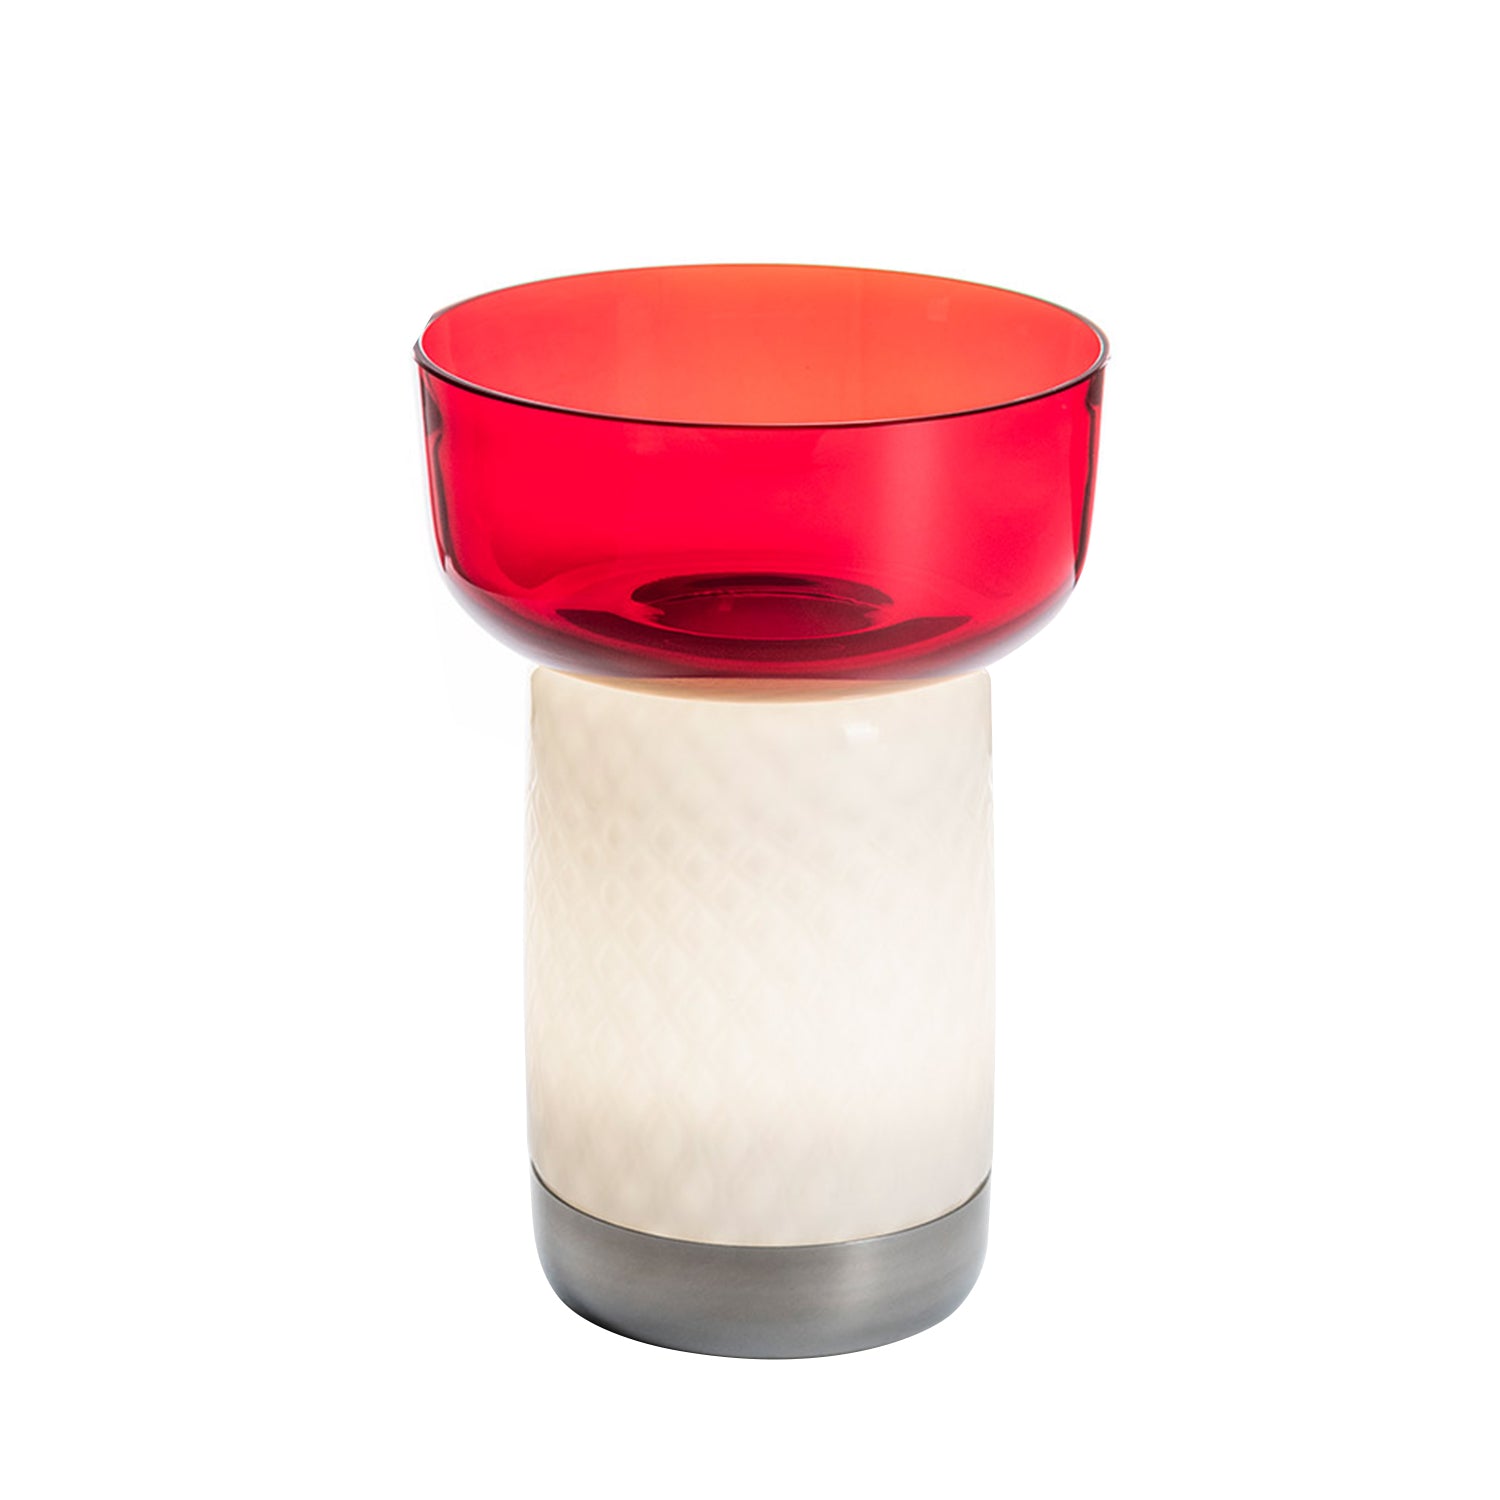 Artemide Bonta Portable Lamp & Bowl Red